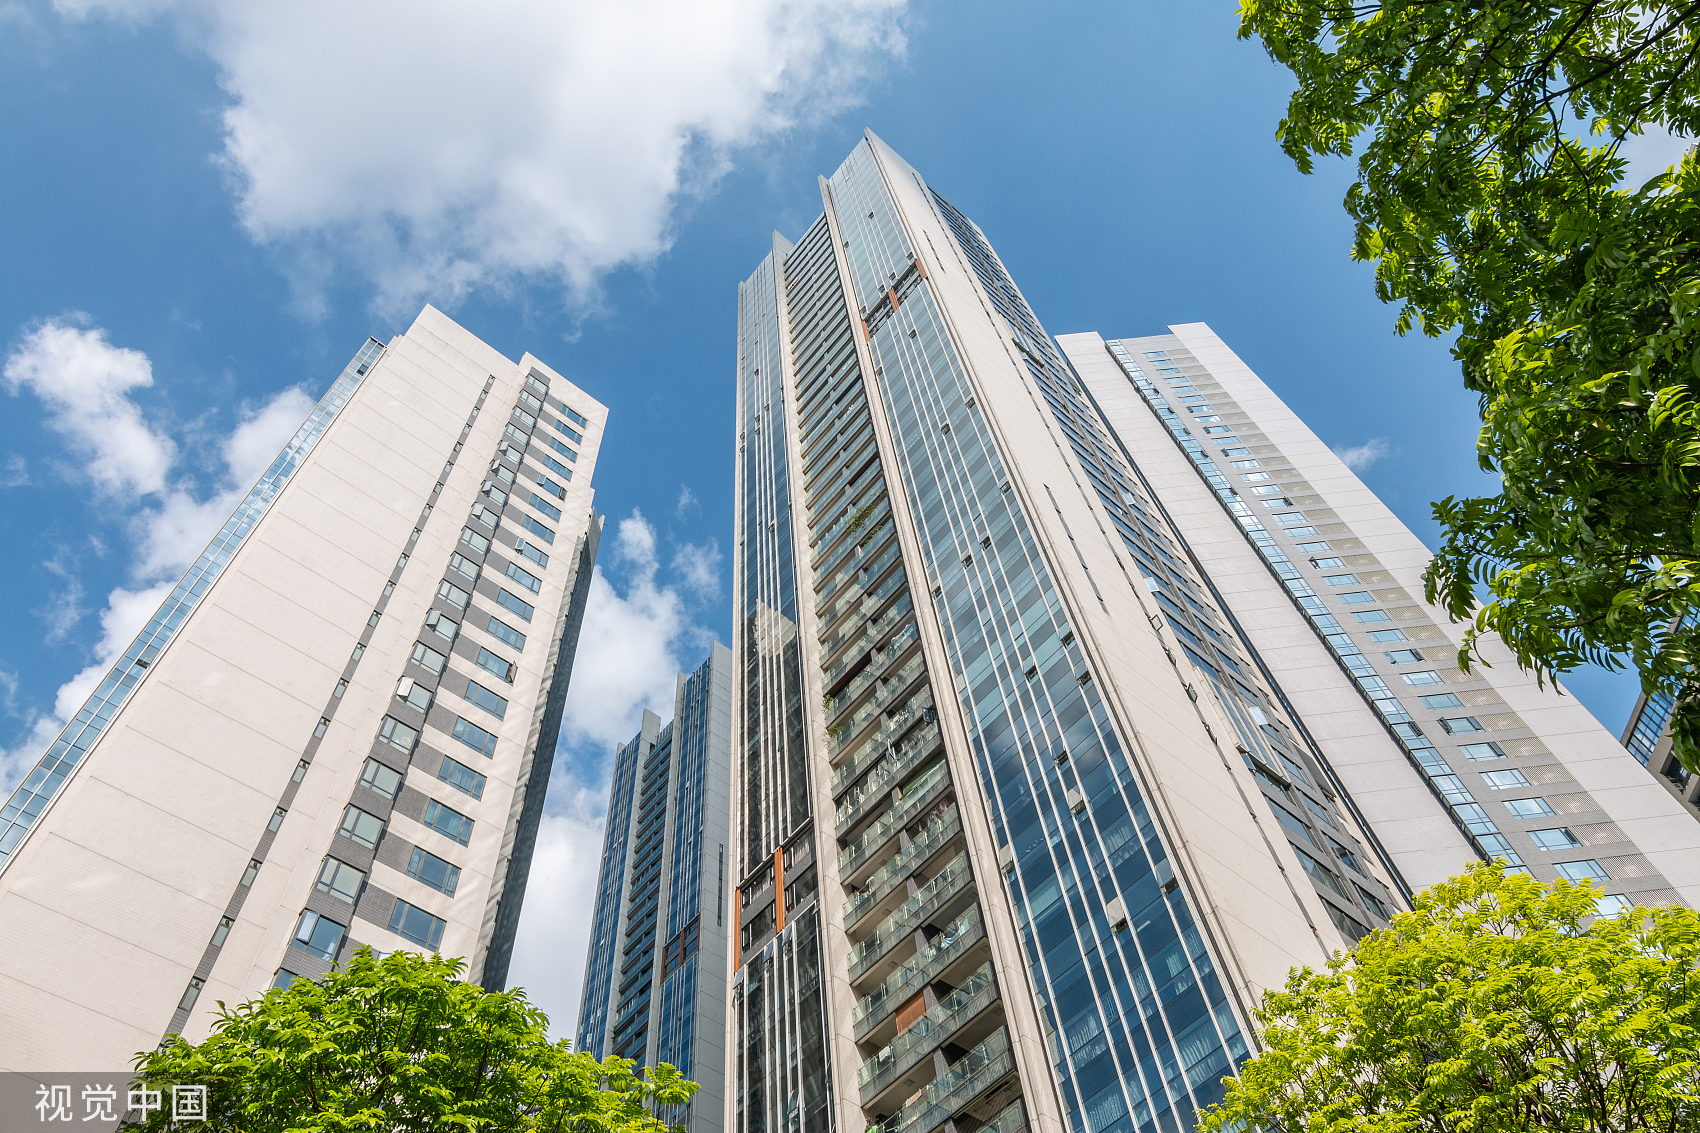 上月山东8市发布公积金新政 提高贷款额度支持高品质住宅成主流